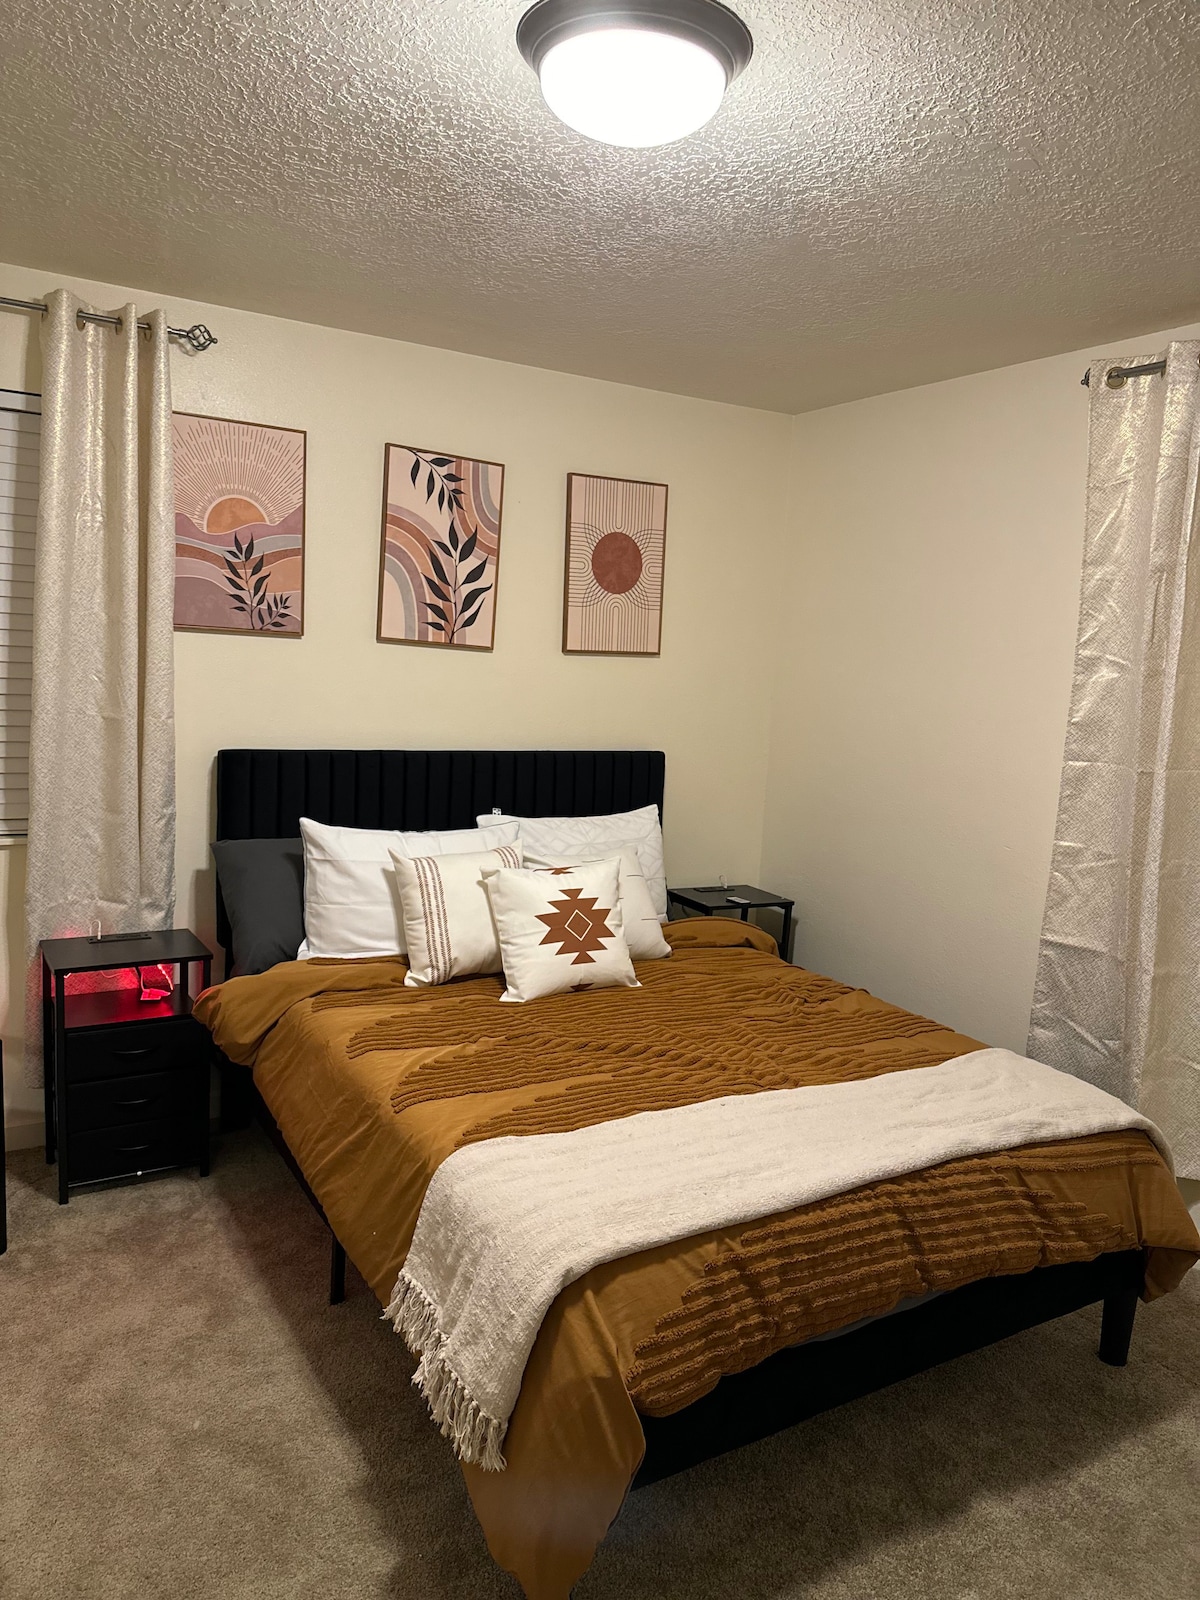 2 Bedroom Apt w/ Massage Chair & Indoor Pool